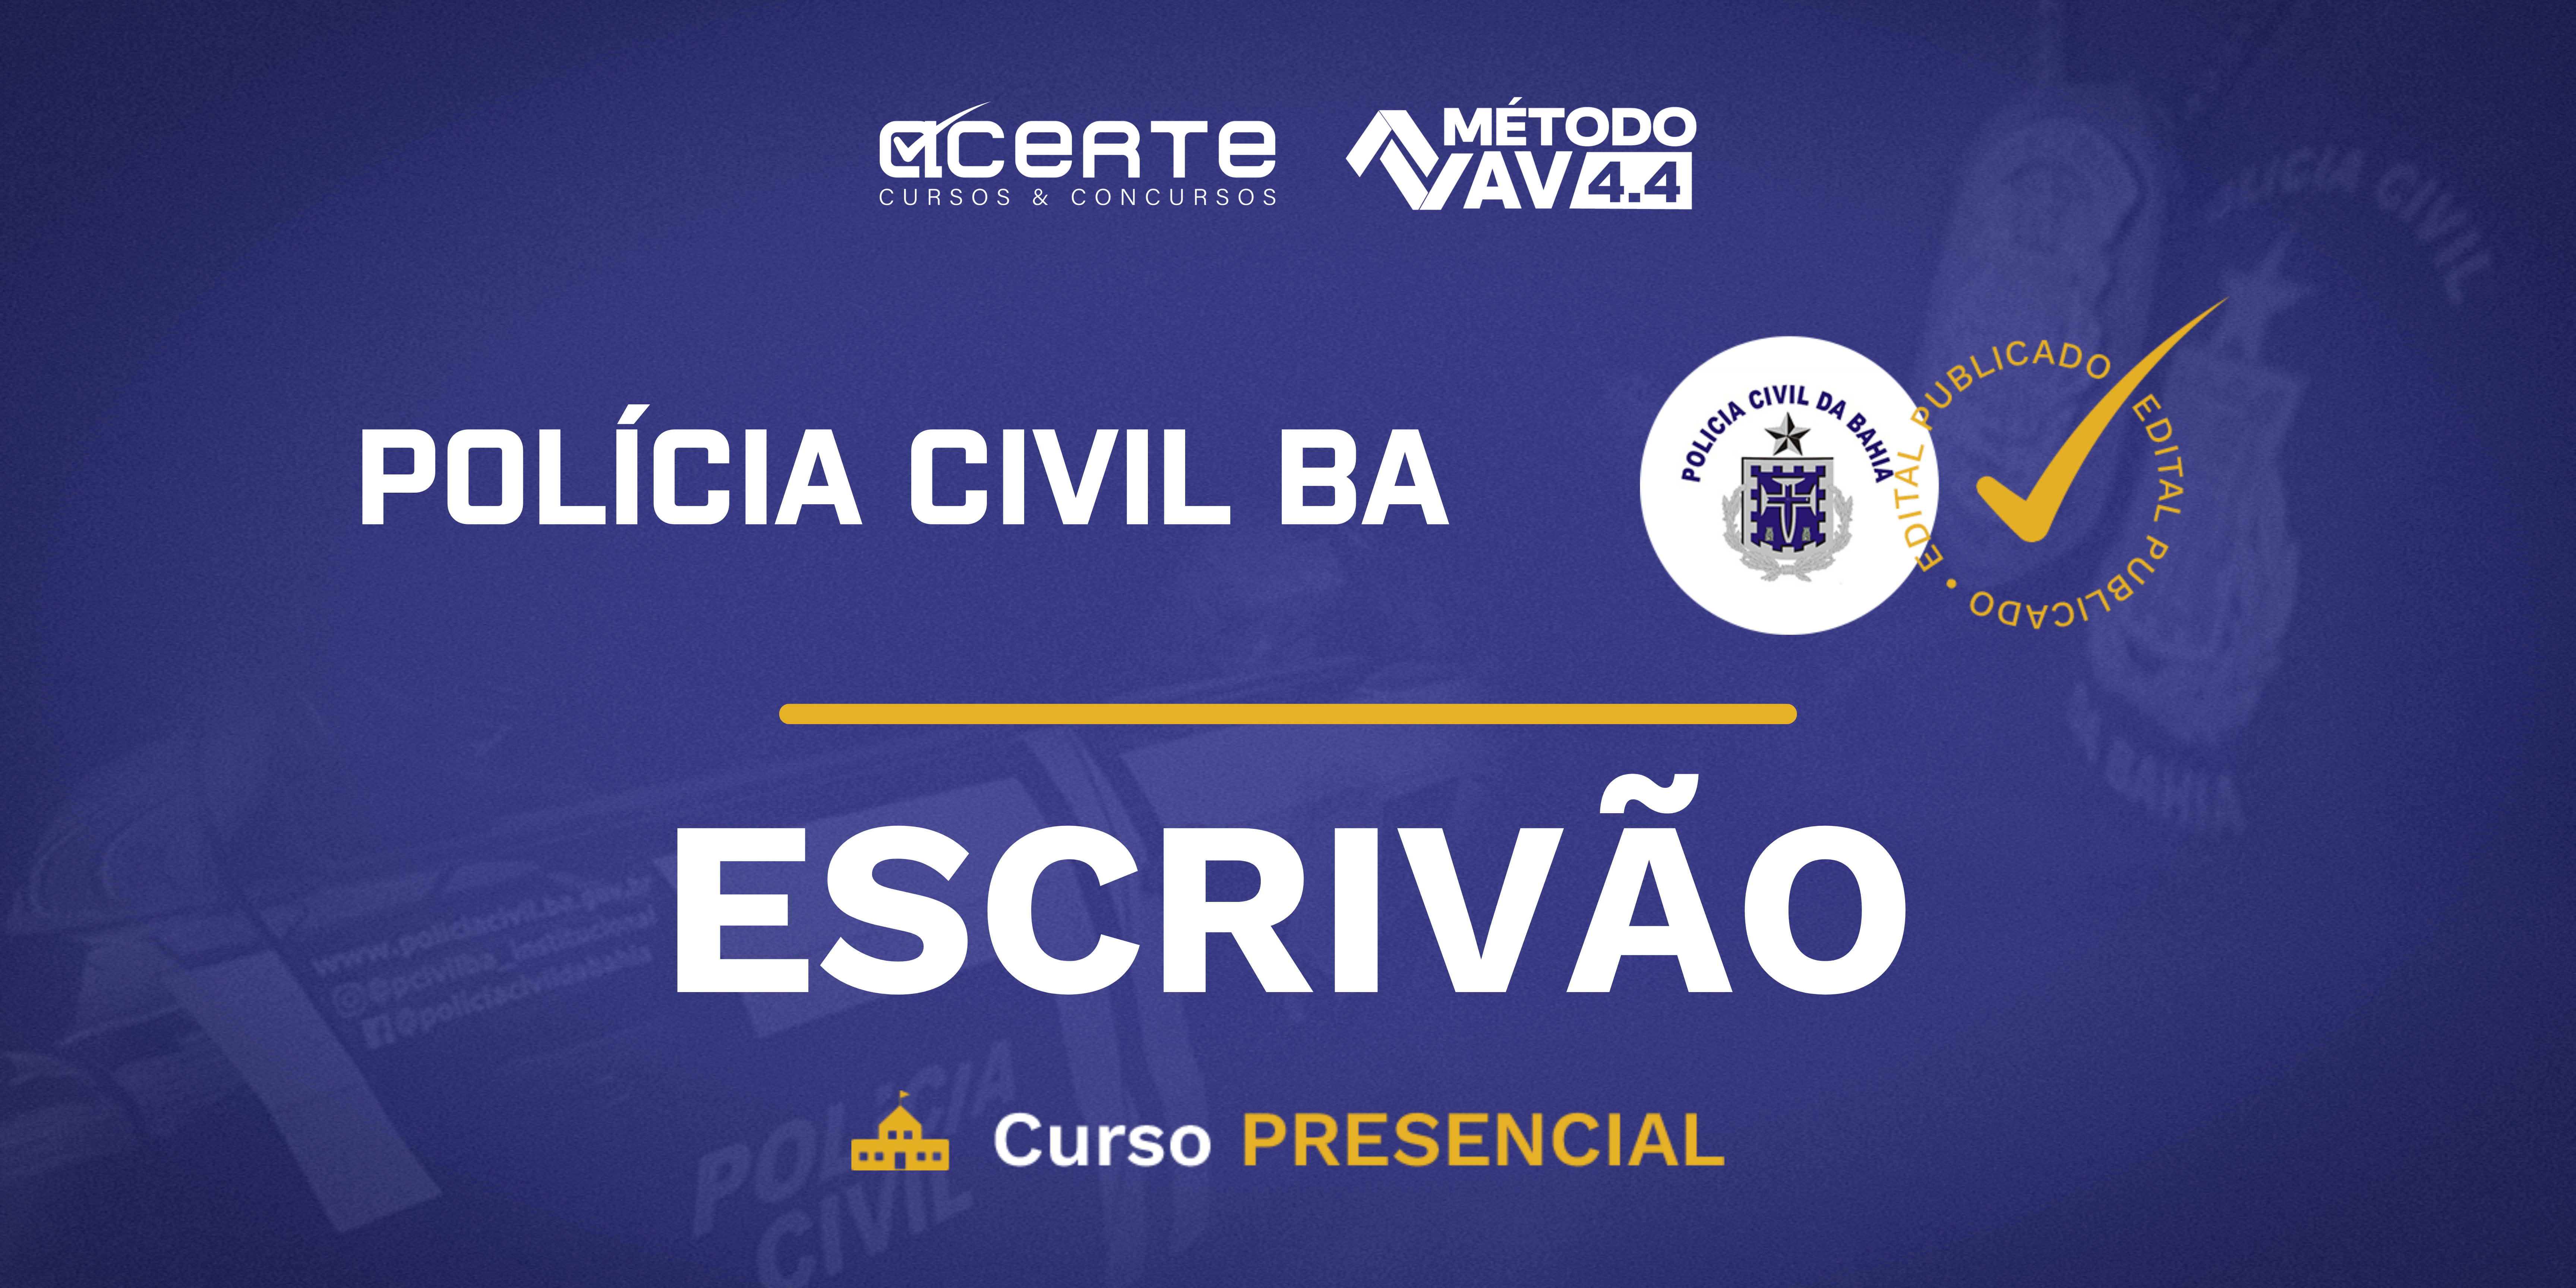 Método AV 4.4 - Polícia Civil da Bahia - Escrivão - Presencial